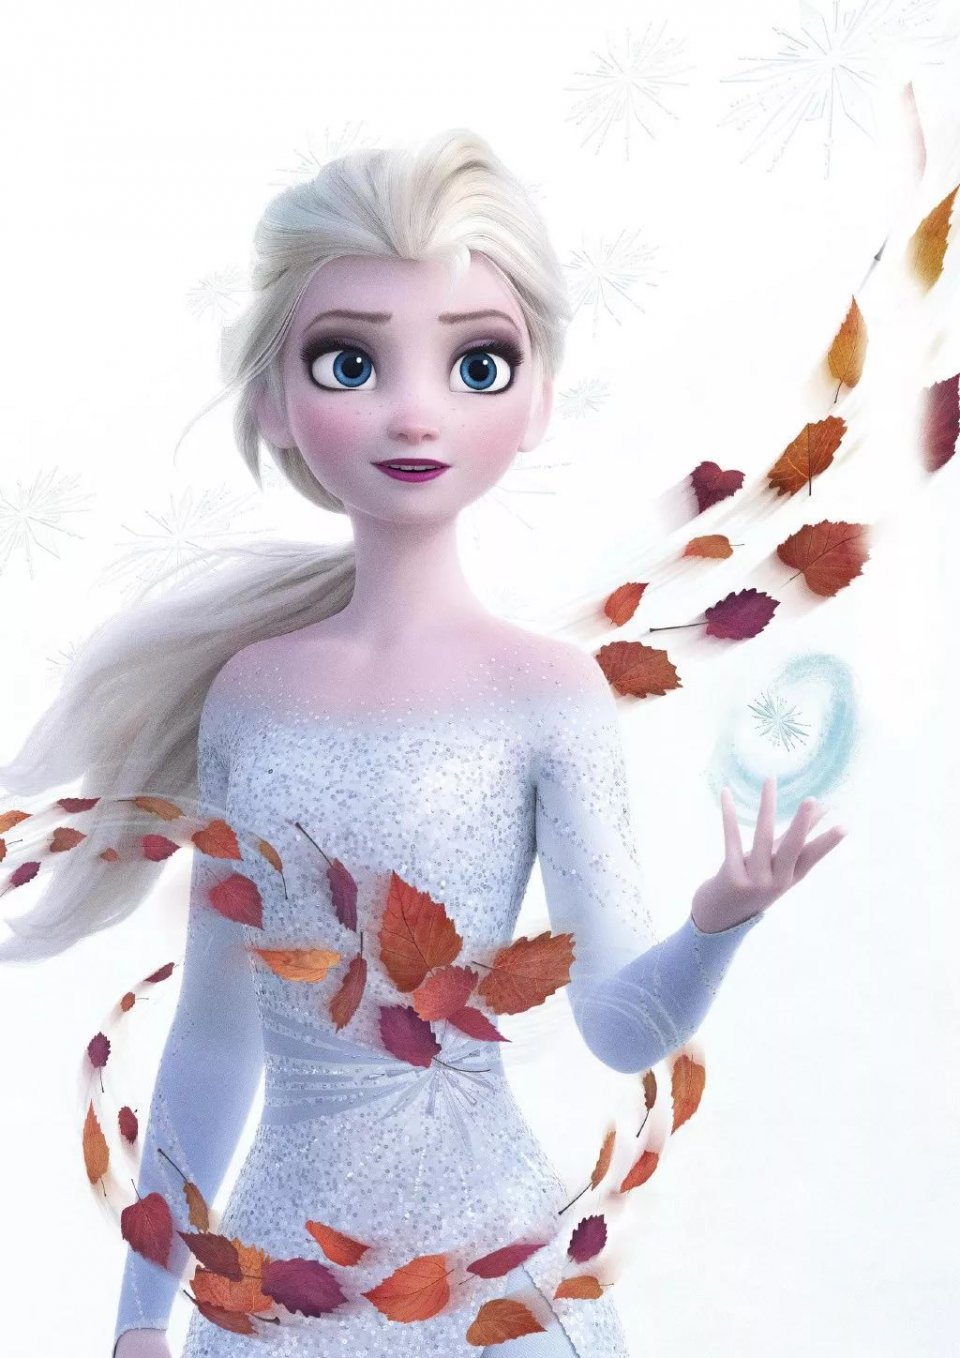 《冰雪奇缘2》艾莎公主要来一统你们的审美观了